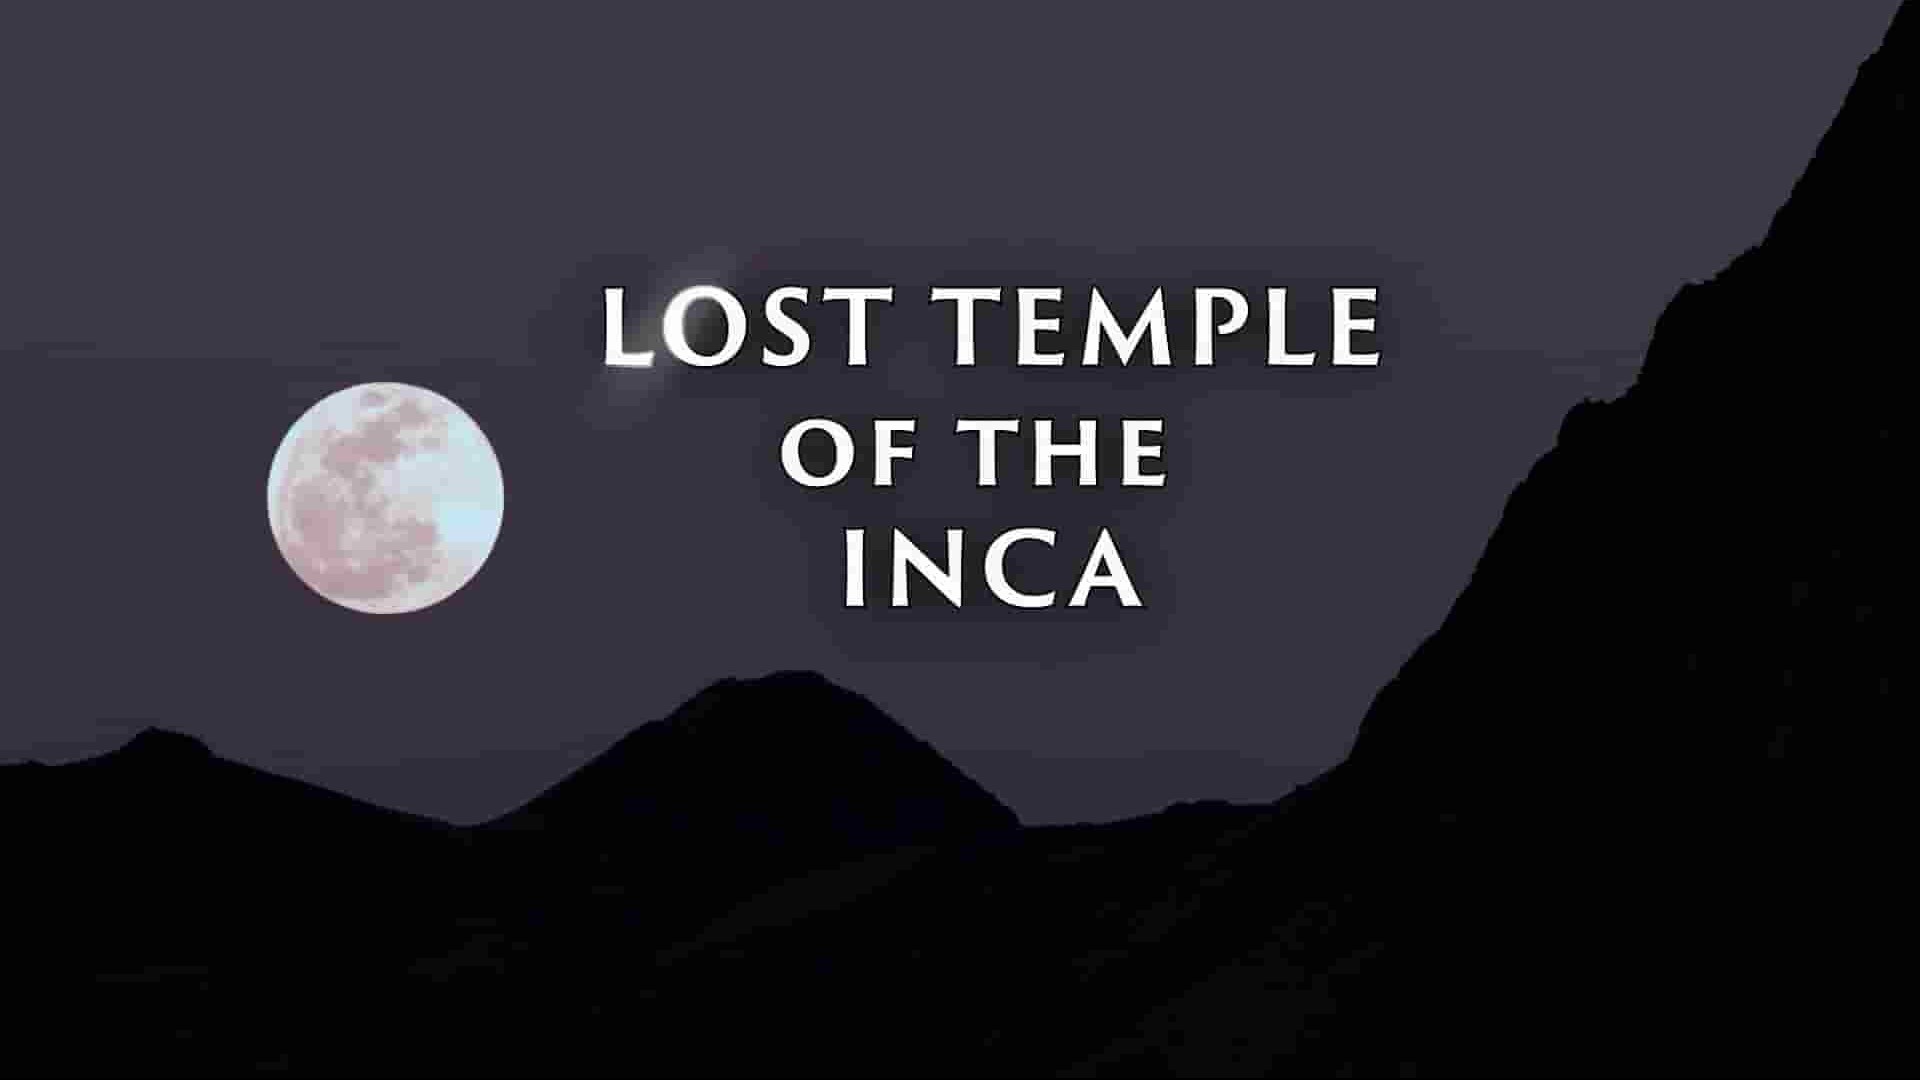 国家地理《失落的印加神庙/印加失落神庙 Lost Temple of the Inca 2020》全1集 英语多国中字 1080P高清网盘下载